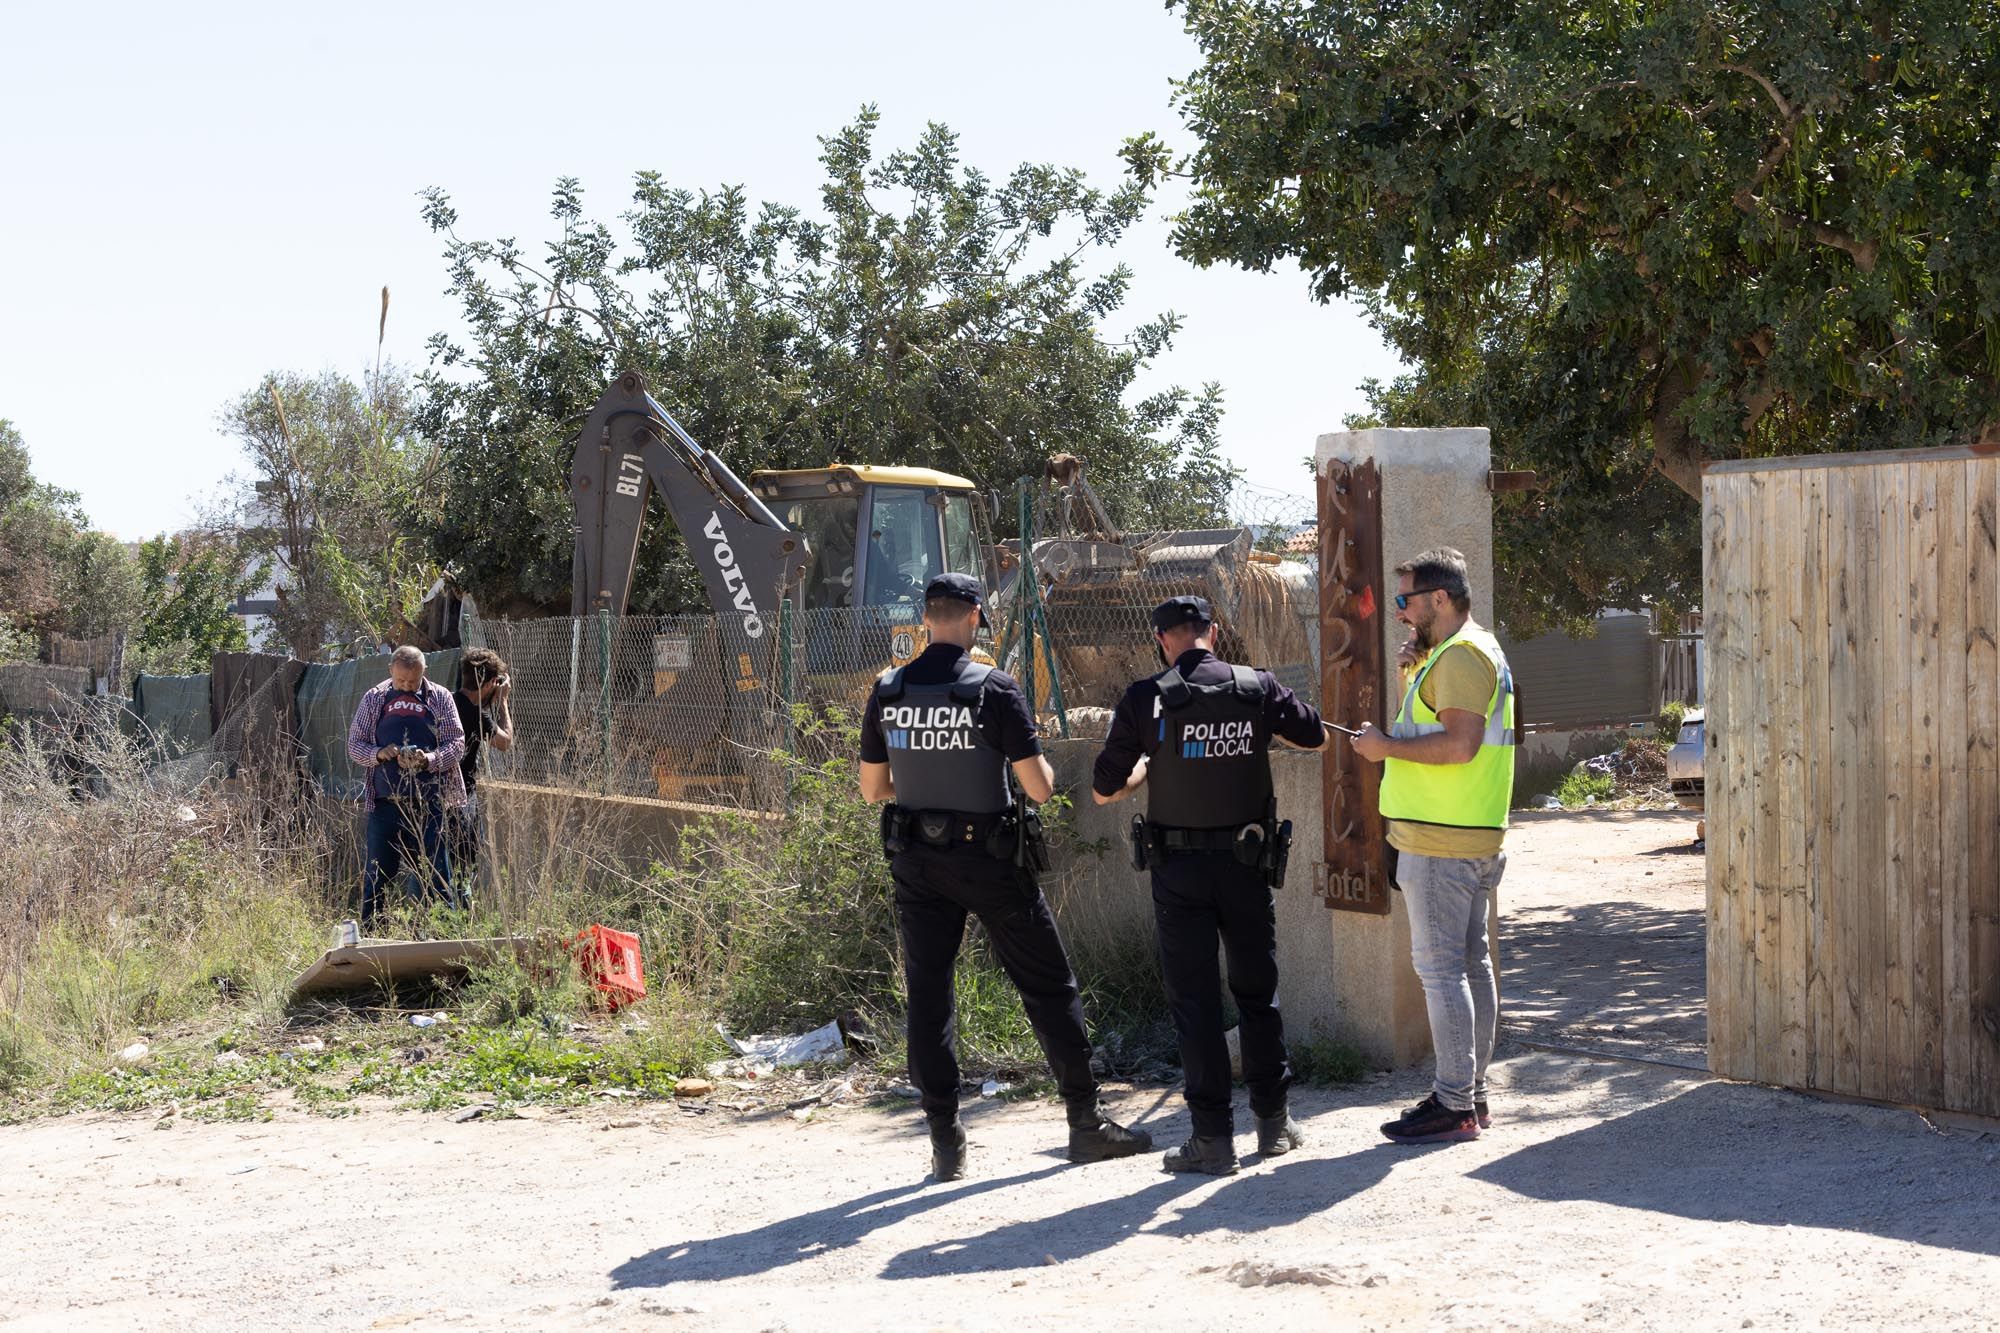 Comienza el desalojo del poblado ilegal de infraviviendas en Ibiza